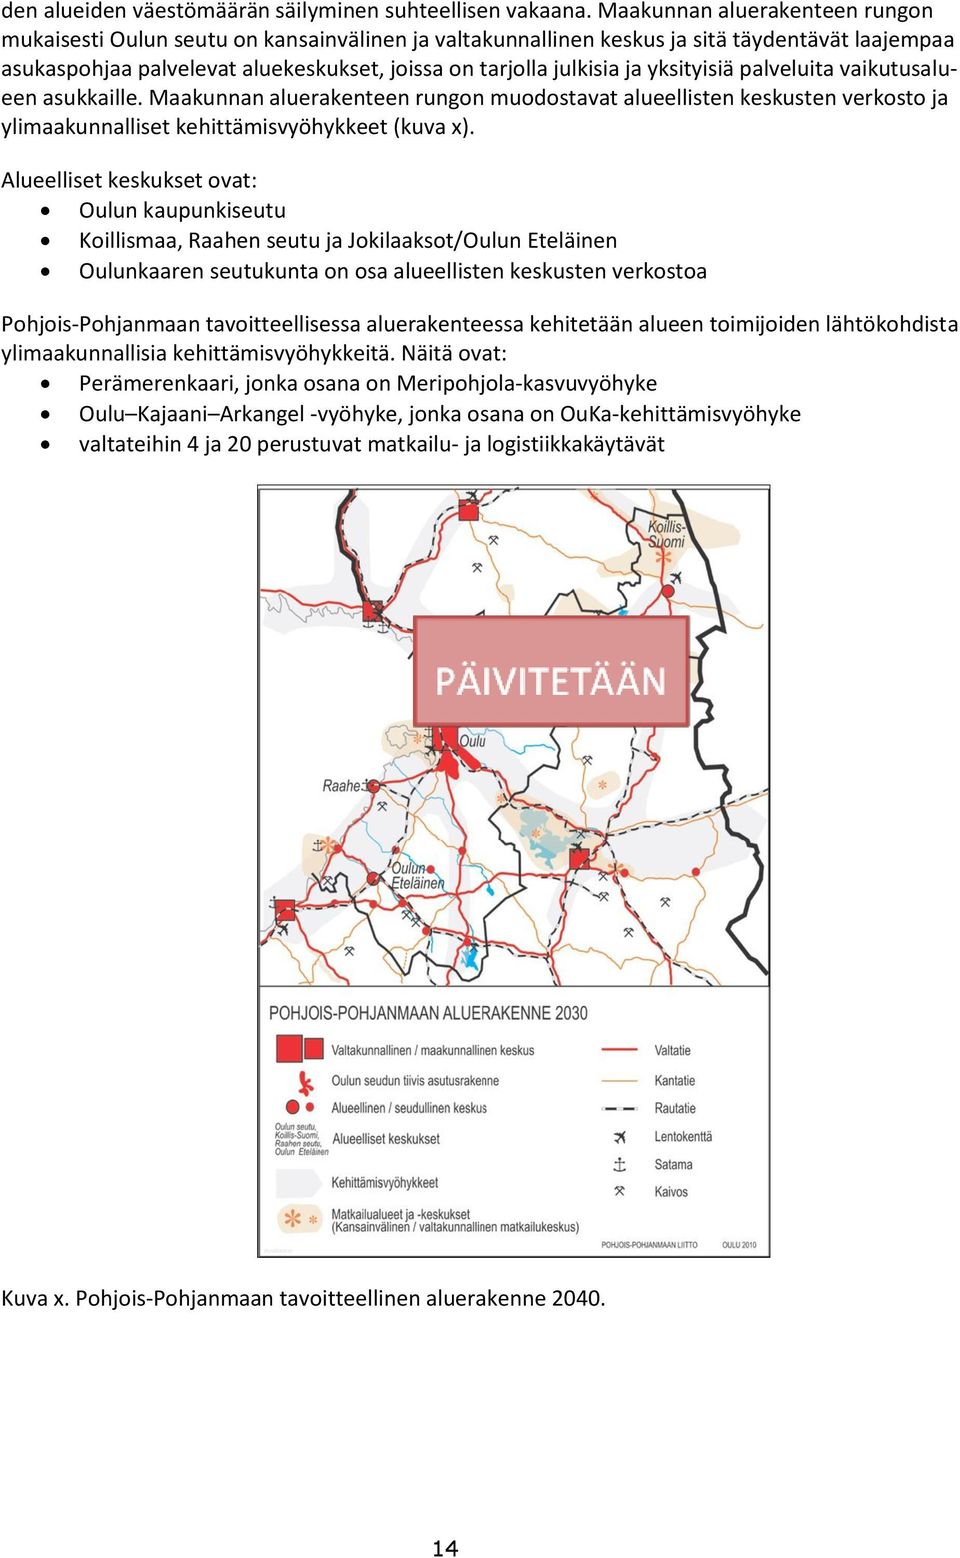 yksityisiä palveluita vaikutusalueen asukkaille. Maakunnan aluerakenteen rungon muodostavat alueellisten keskusten verkosto ja ylimaakunnalliset kehittämisvyöhykkeet (kuva x).